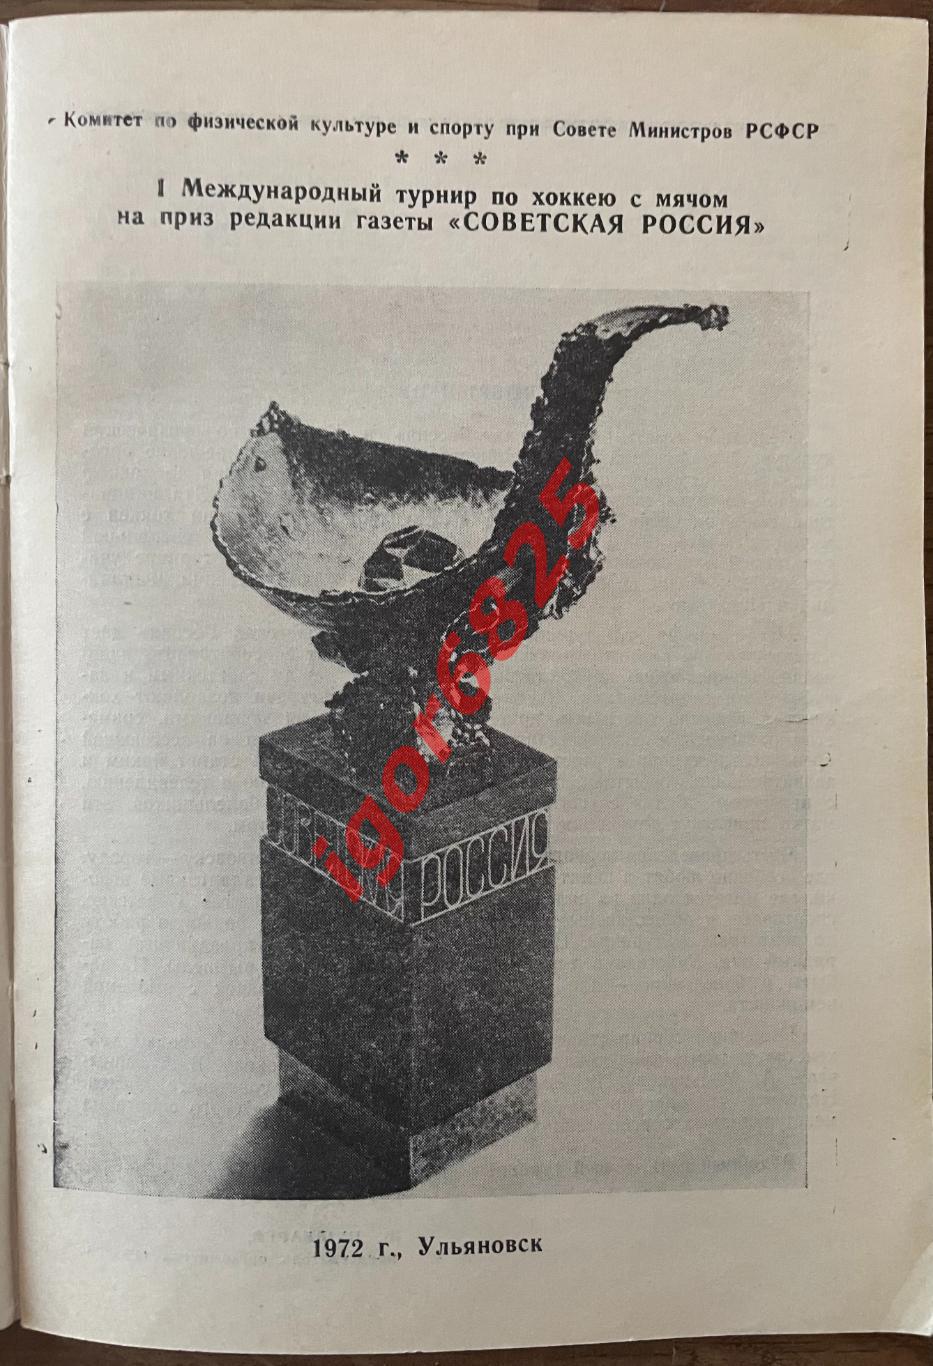 Хоккей с мячом. Турнир на приз газеты Советская Россия. 14-18 января 1972 года. 1